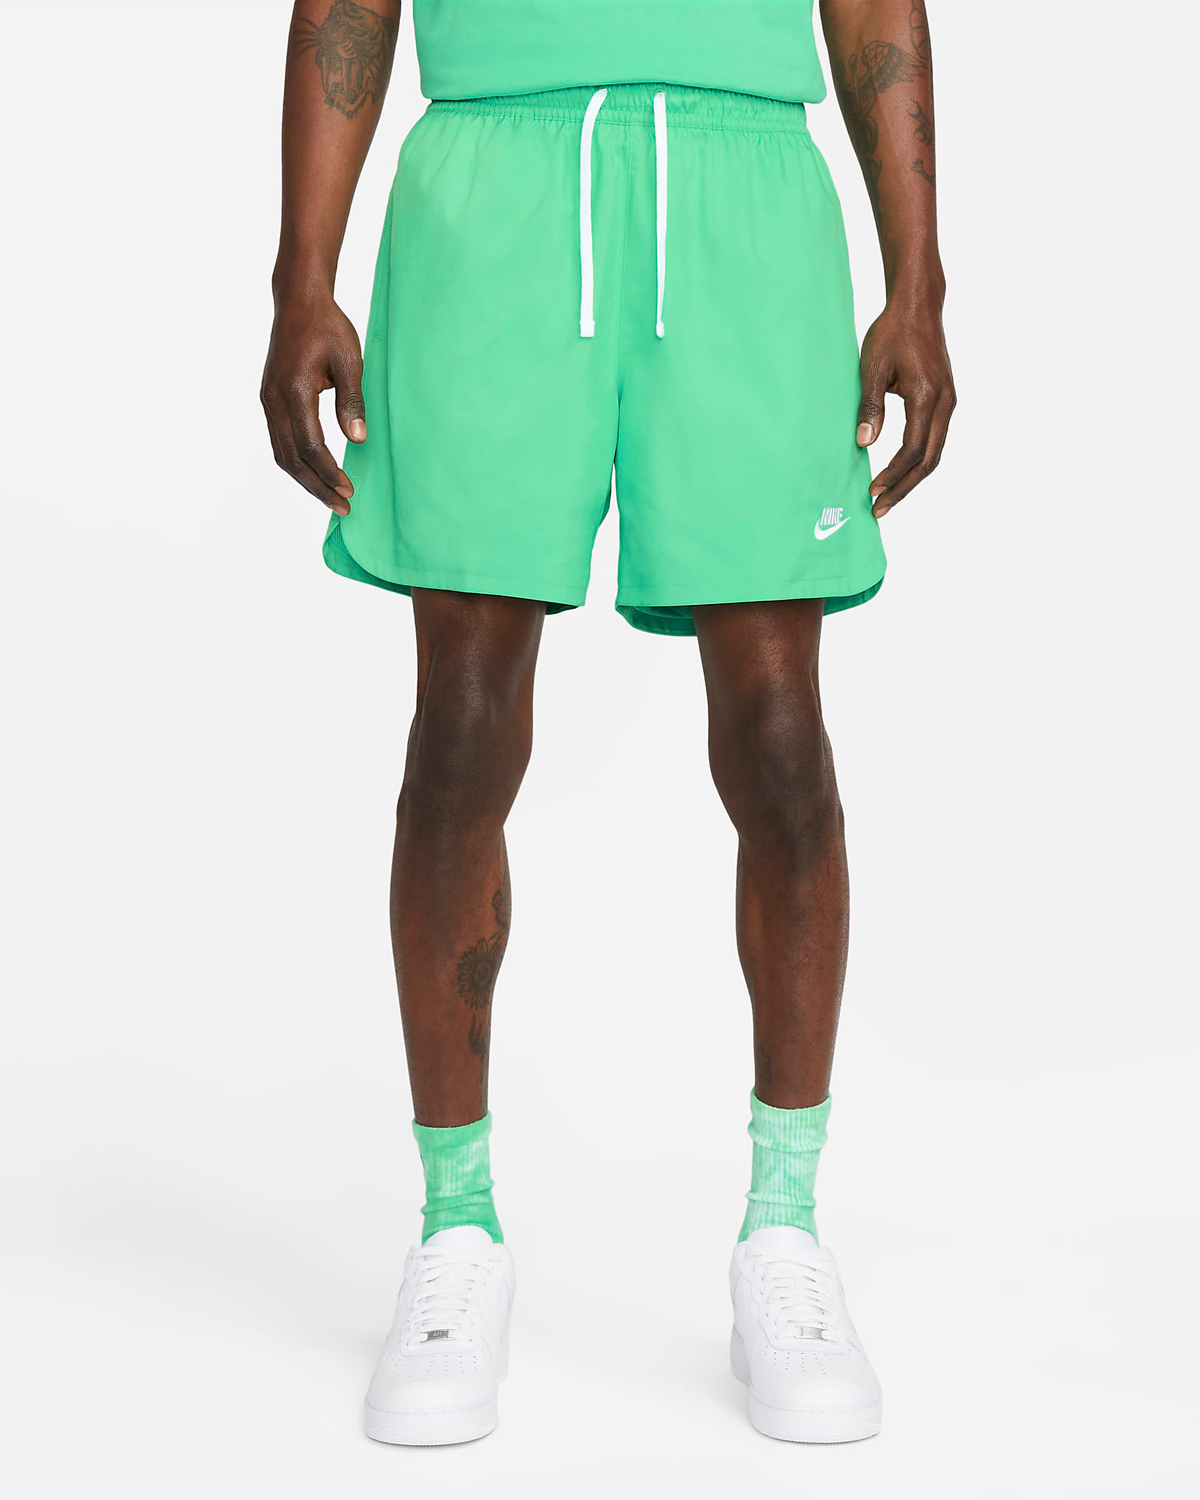 Nike-Woven-Flow-Shorts-Green-Glow